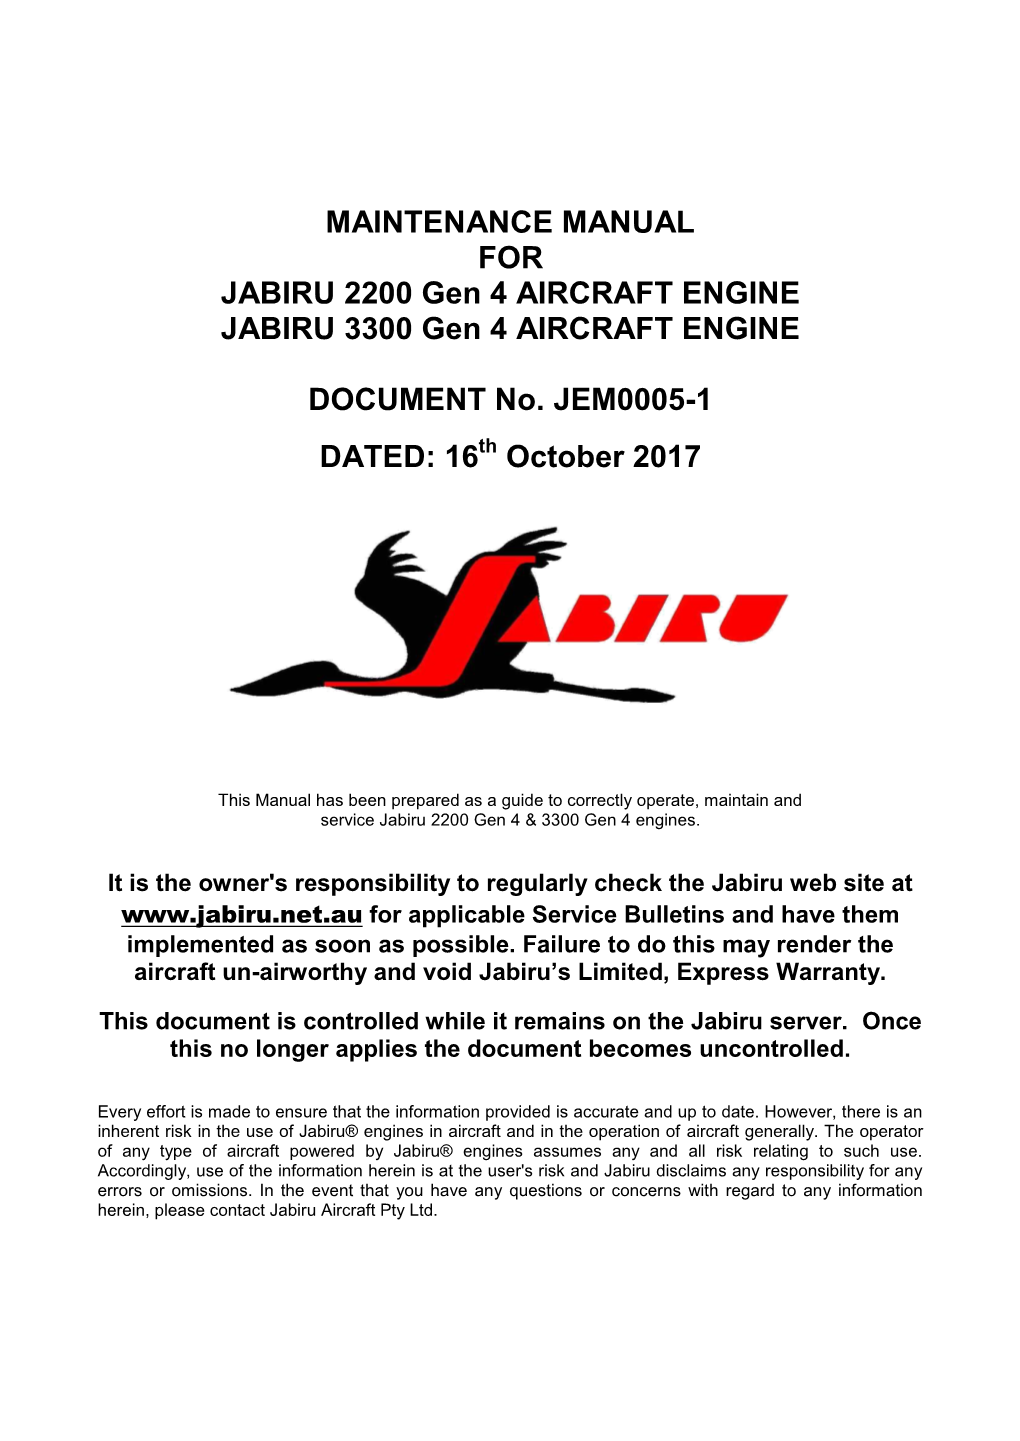 MAINTENANCE MANUAL for JABIRU 2200 Gen 4 AIRCRAFT ENGINE JABIRU 3300 Gen 4 AIRCRAFT ENGINE